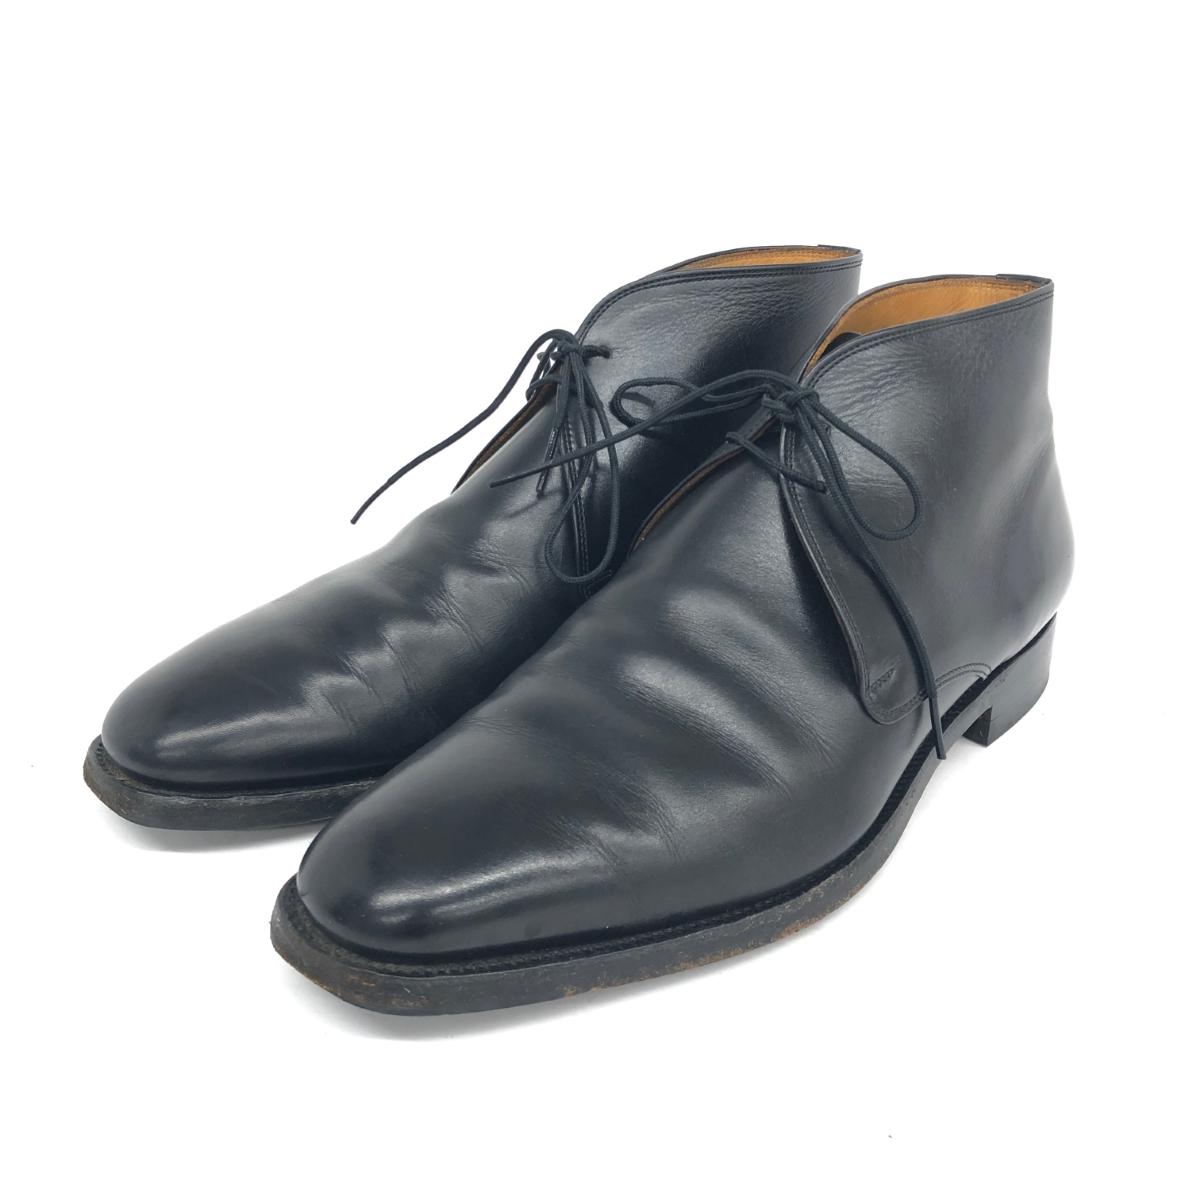 SCOTCH GRAIN スコッチグレイン ヒロカワ チェッカブーツ 25 ブラック レザー メンズ 靴 シューズ boots ワークブーツ  202402